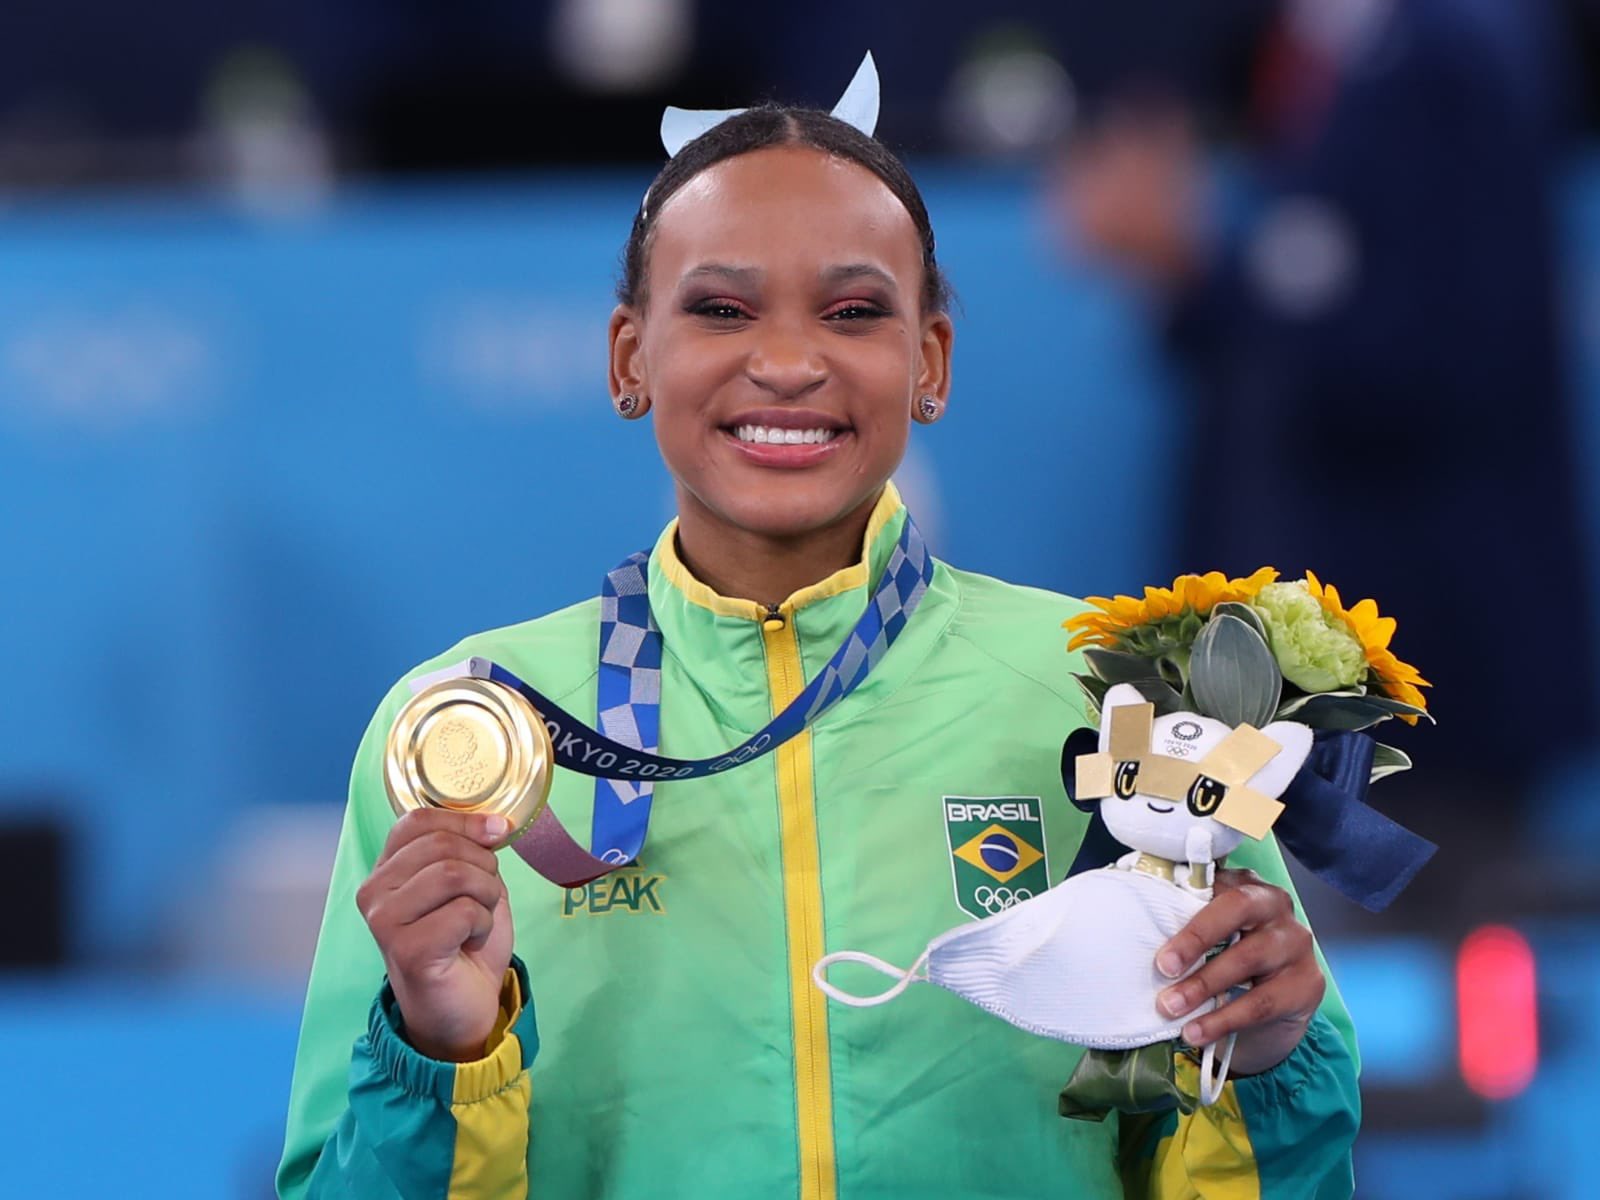 Olimpíada: Rebeca Andrade leva medalha de ouro no salto e faz história nos Jogos de Tóquio